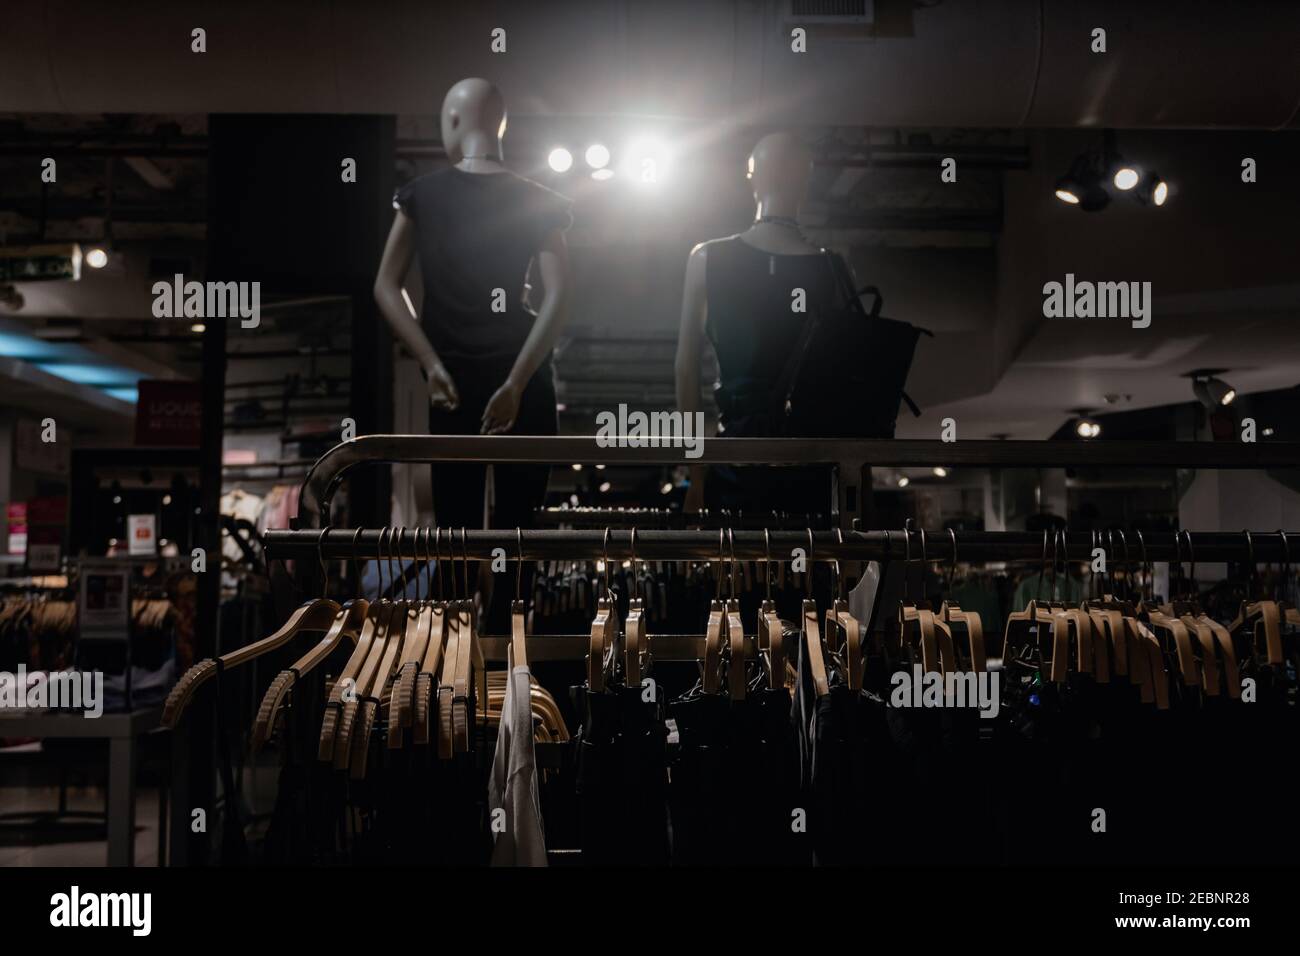 Tienda de ropa con ropa en estanterías y dos maniquíes en el fondo con negra, con luz cegadora en la foto, Buenos Aires, fala Fotografía de stock - Alamy